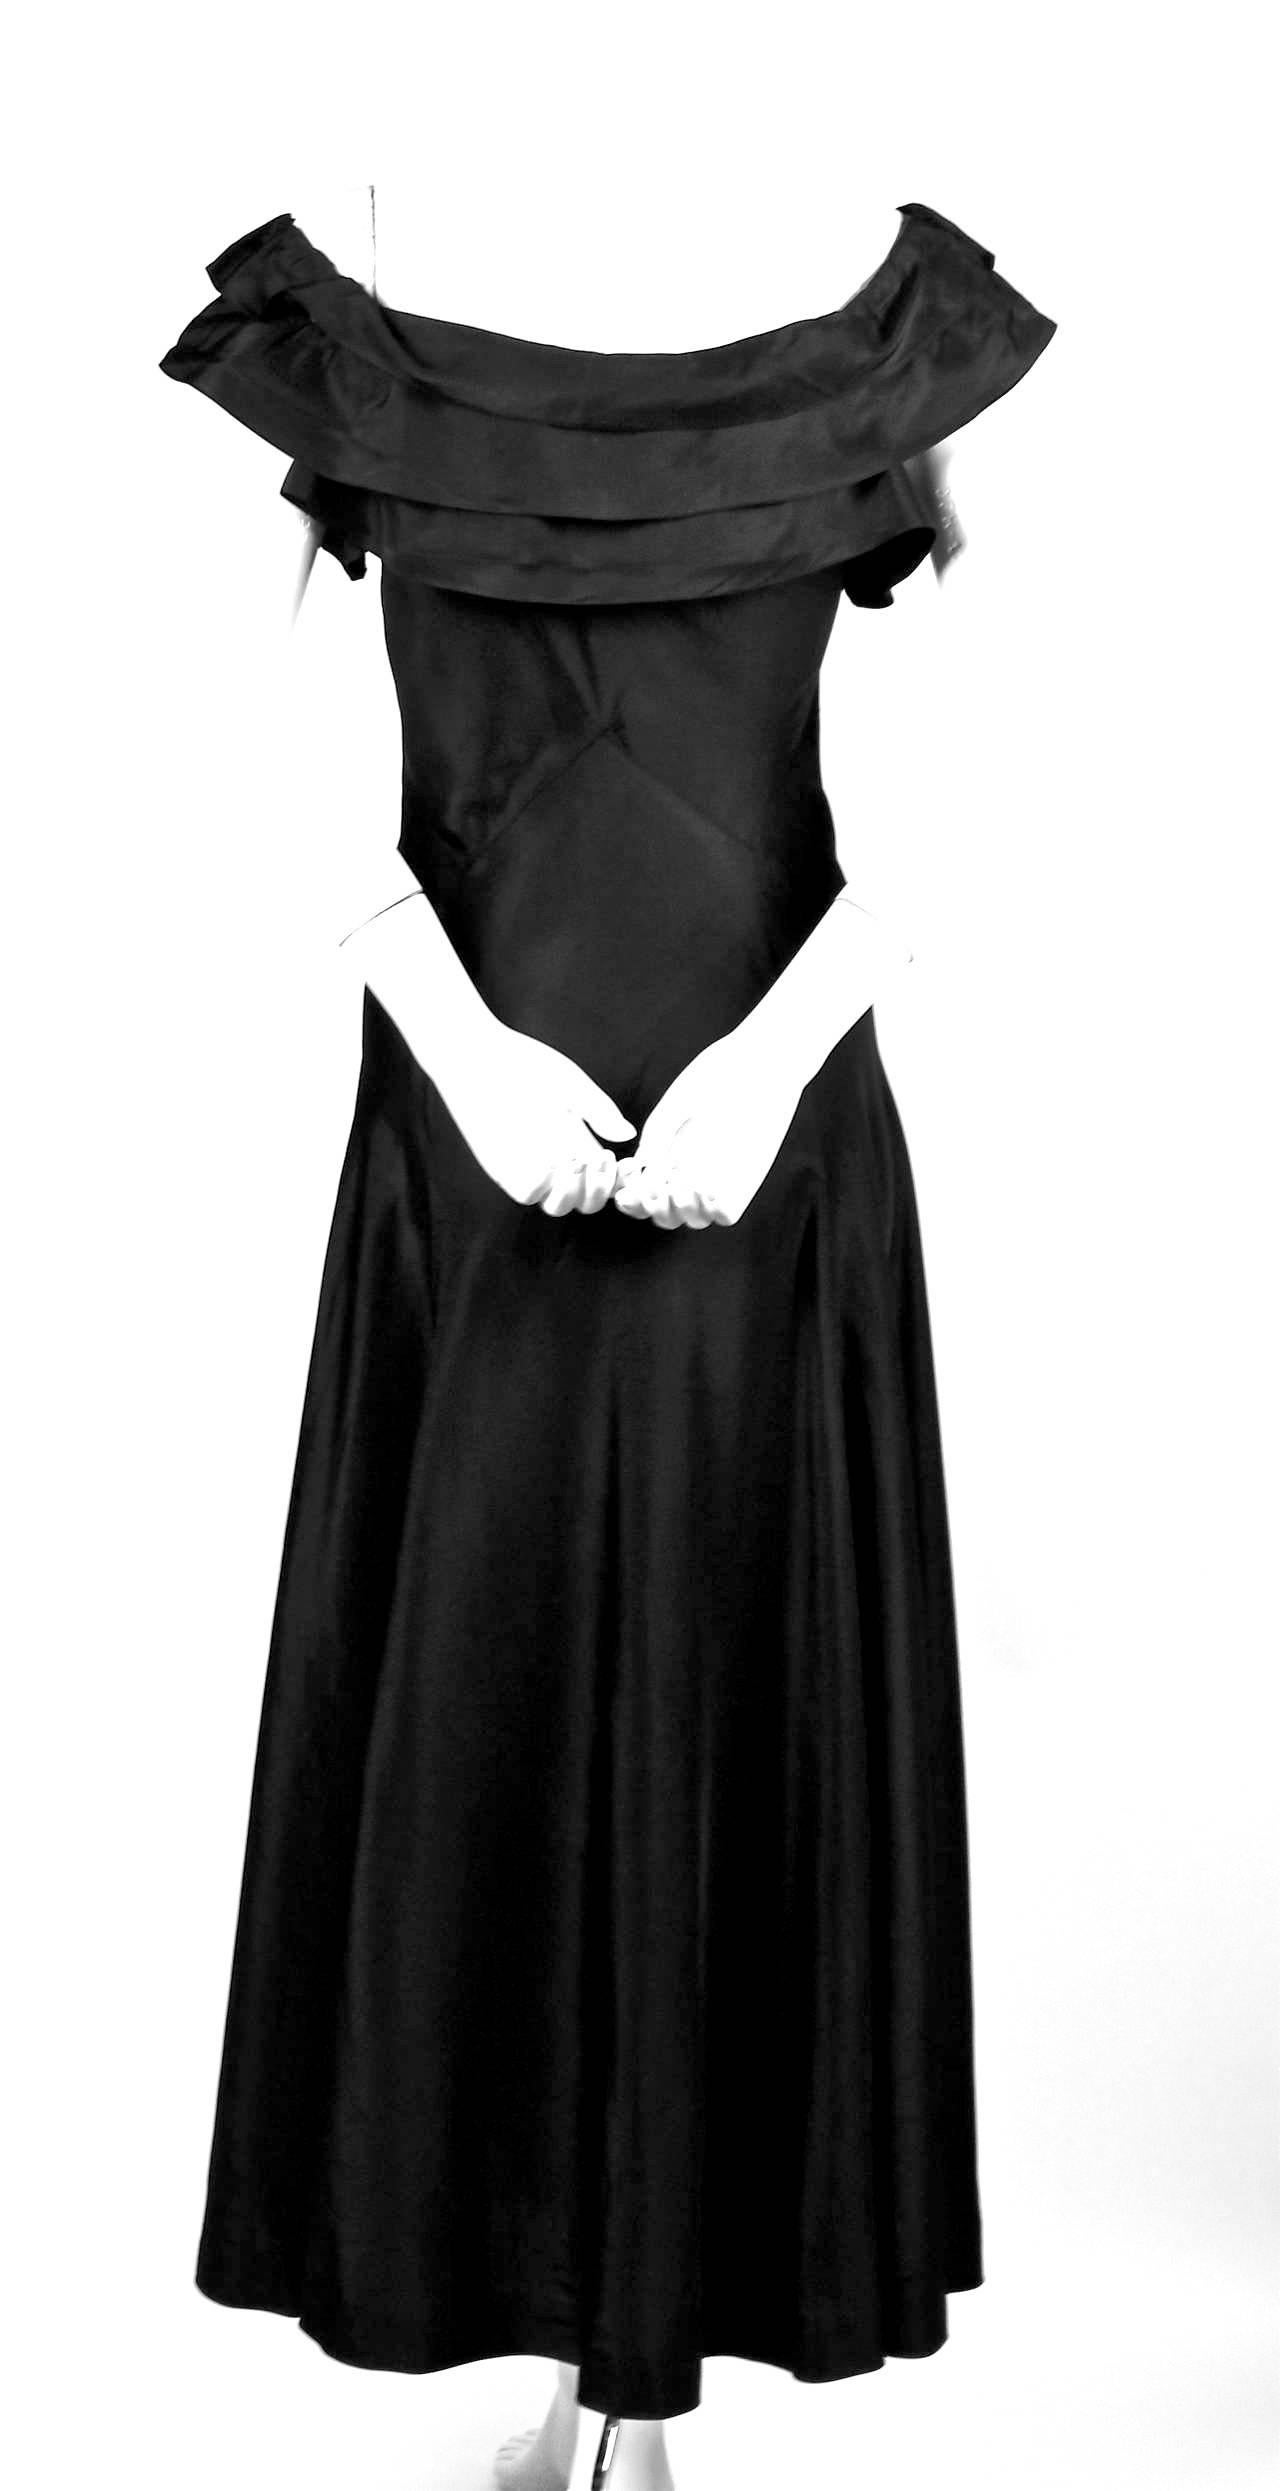 1933 dresses